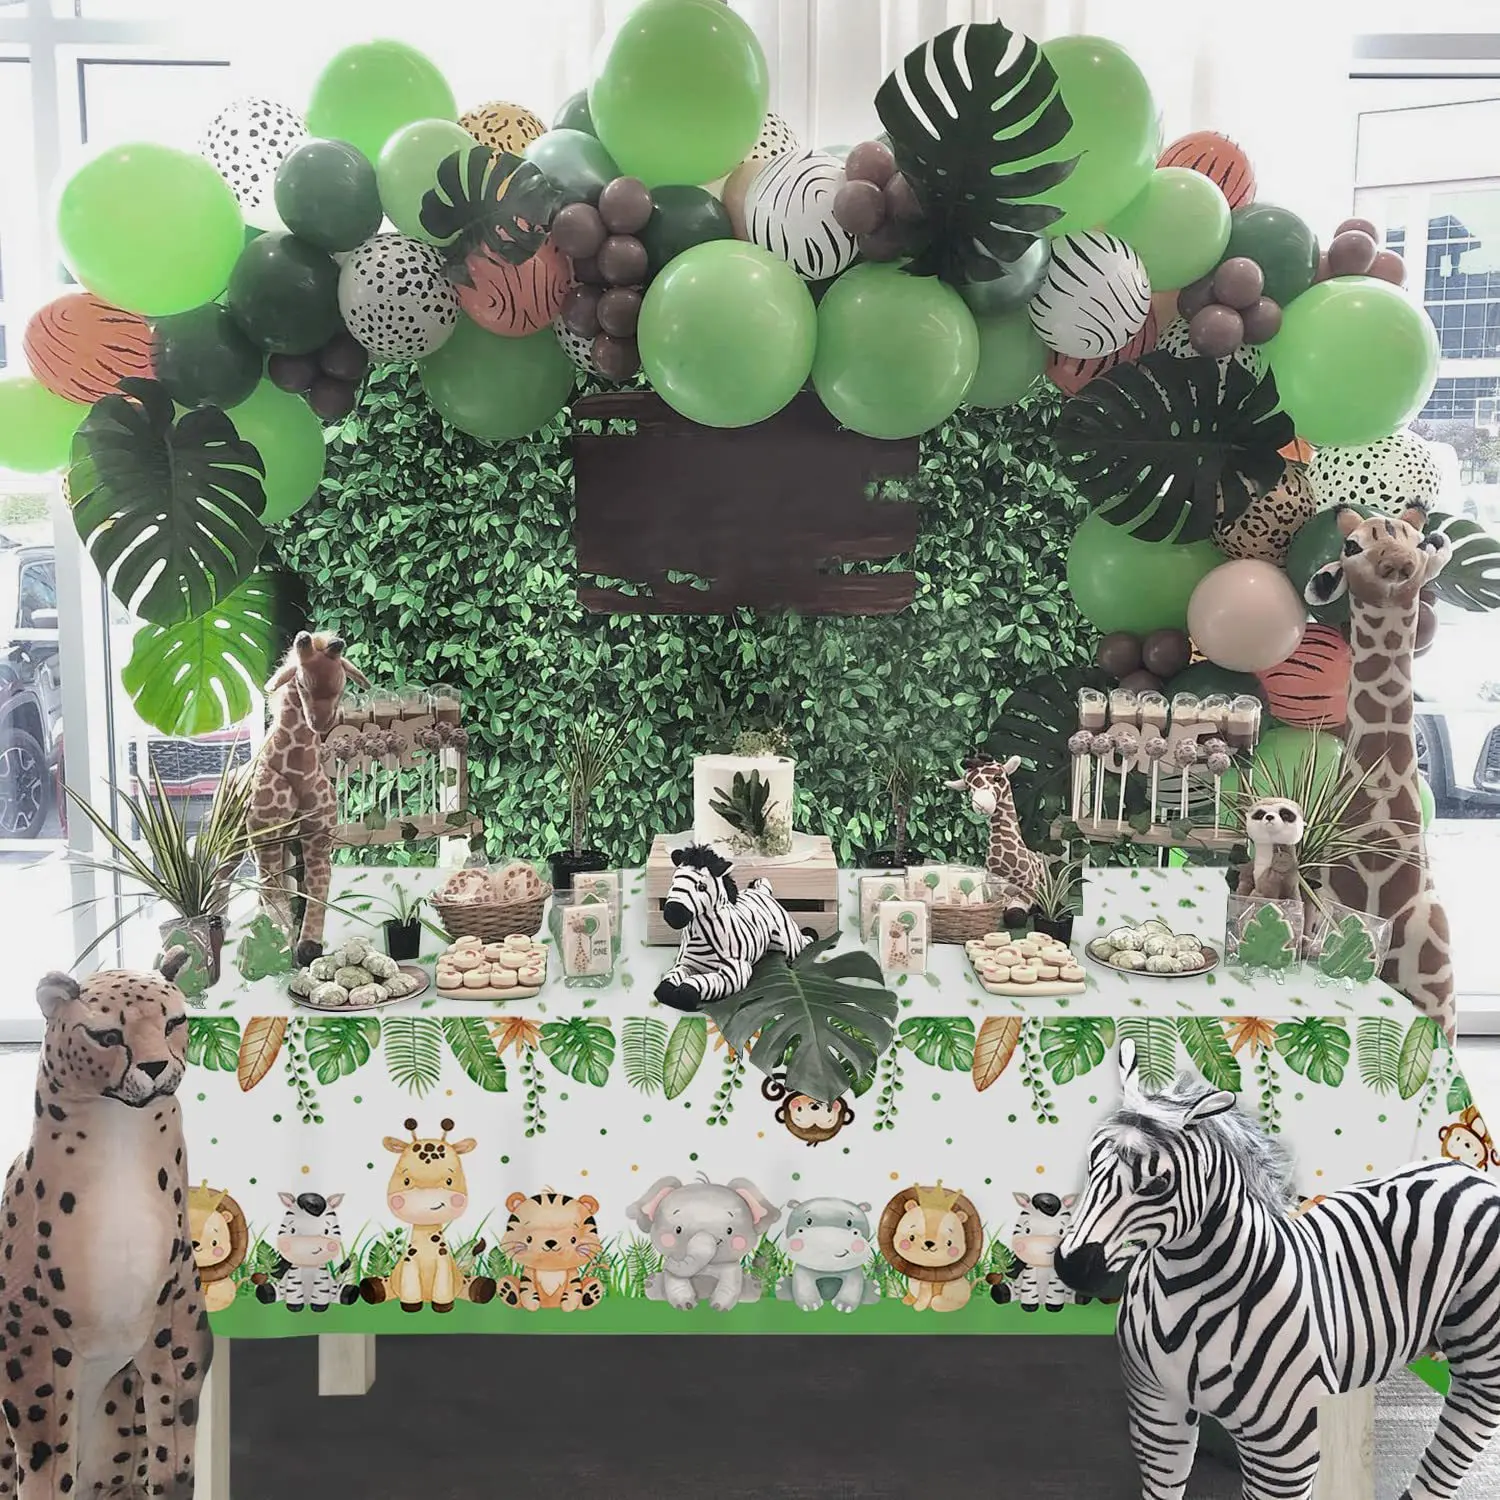 ג 'ונגל חיות שולחן להגדיר' ונגל חיות צלחות כוסות בלון להולדת התינוק הפרוע ספארי מסיבת ילדים ' ונגל מסיבת יום הולדת עיצוב התמונה 4